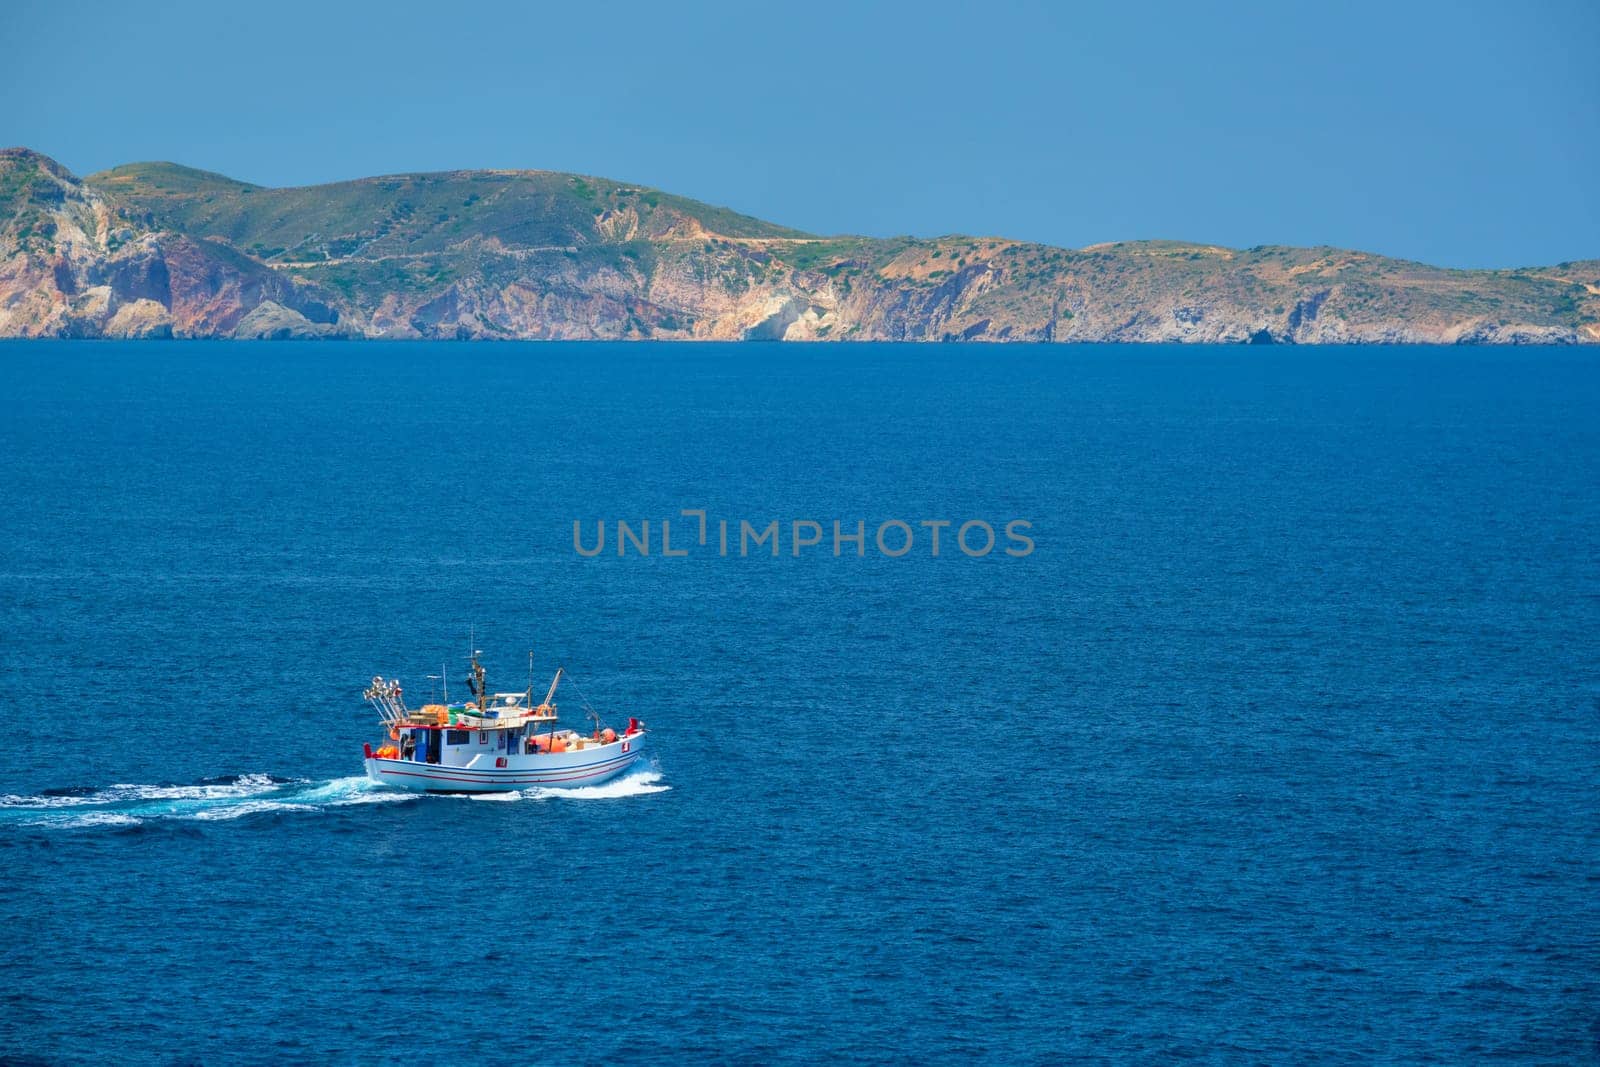 Greek fishing boat in Aegean sea near Milos island, Greece by dimol